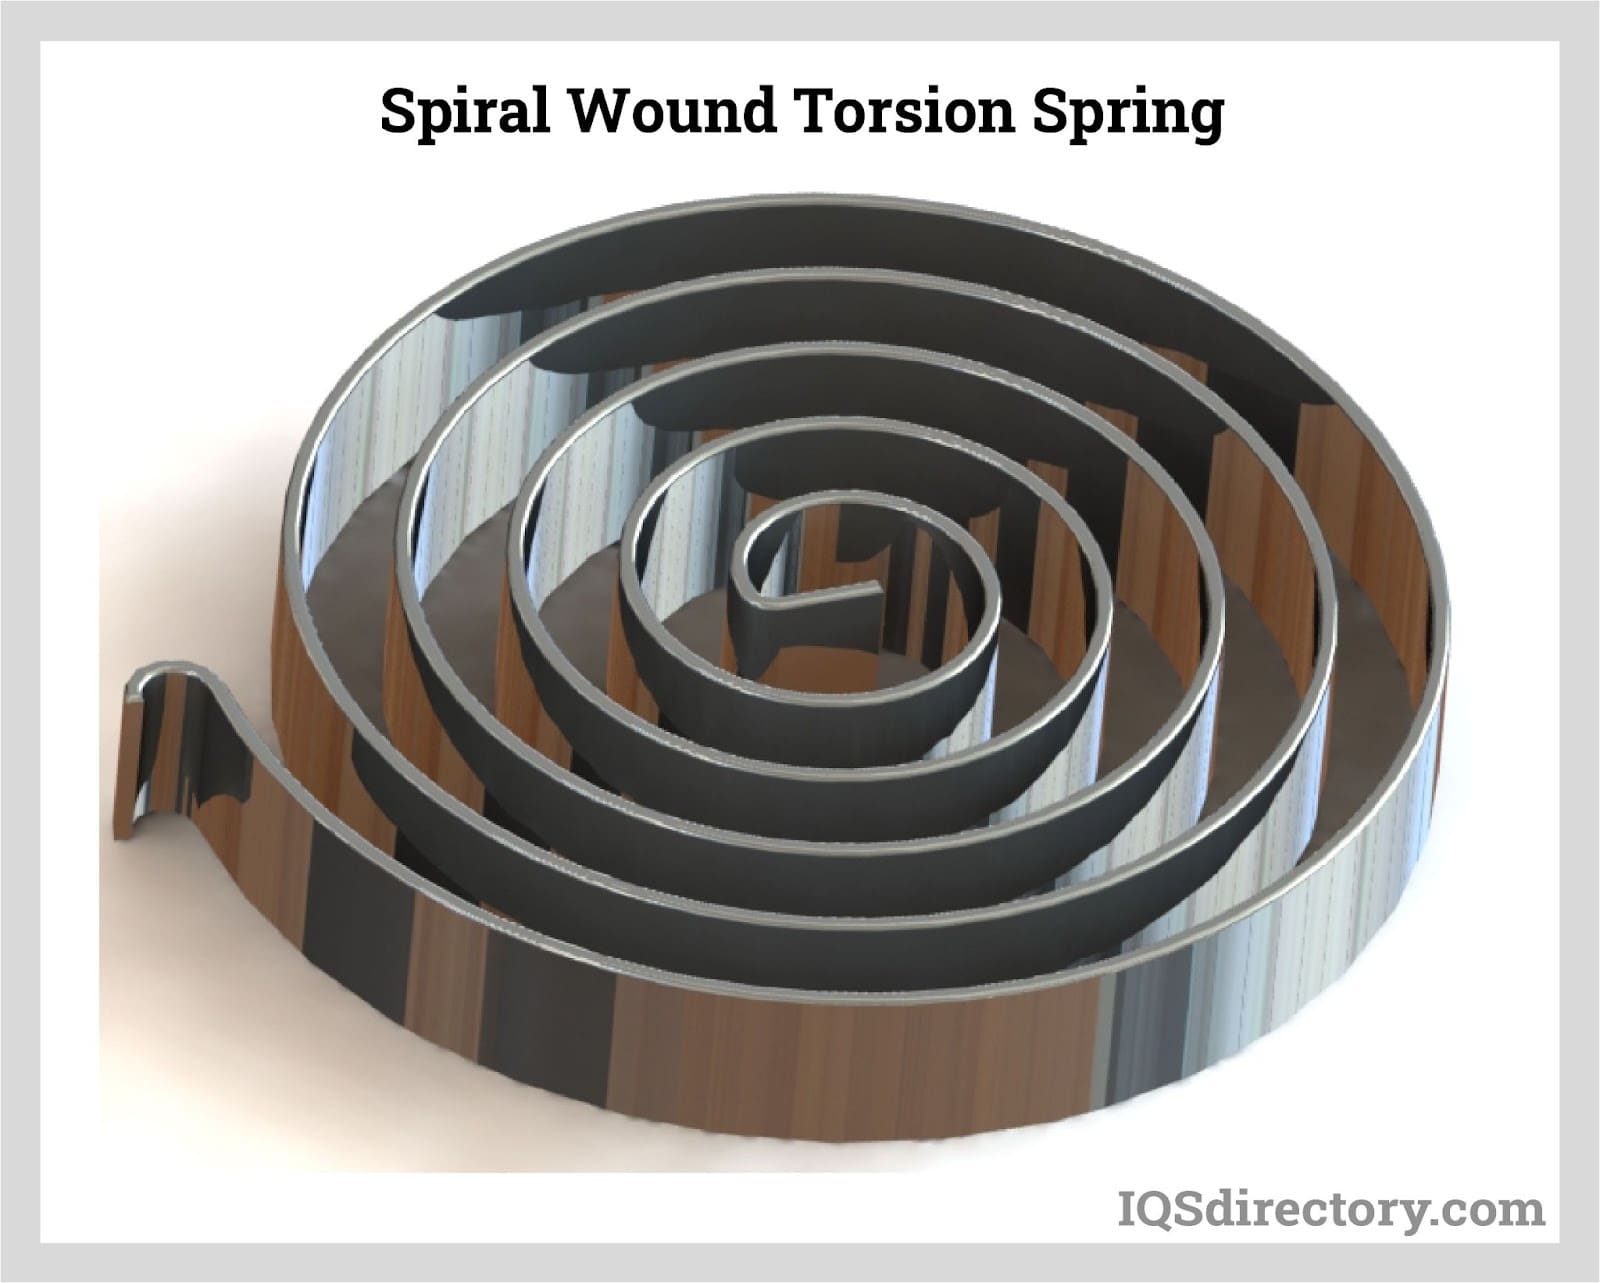 Spiral Wound Torsion Spring